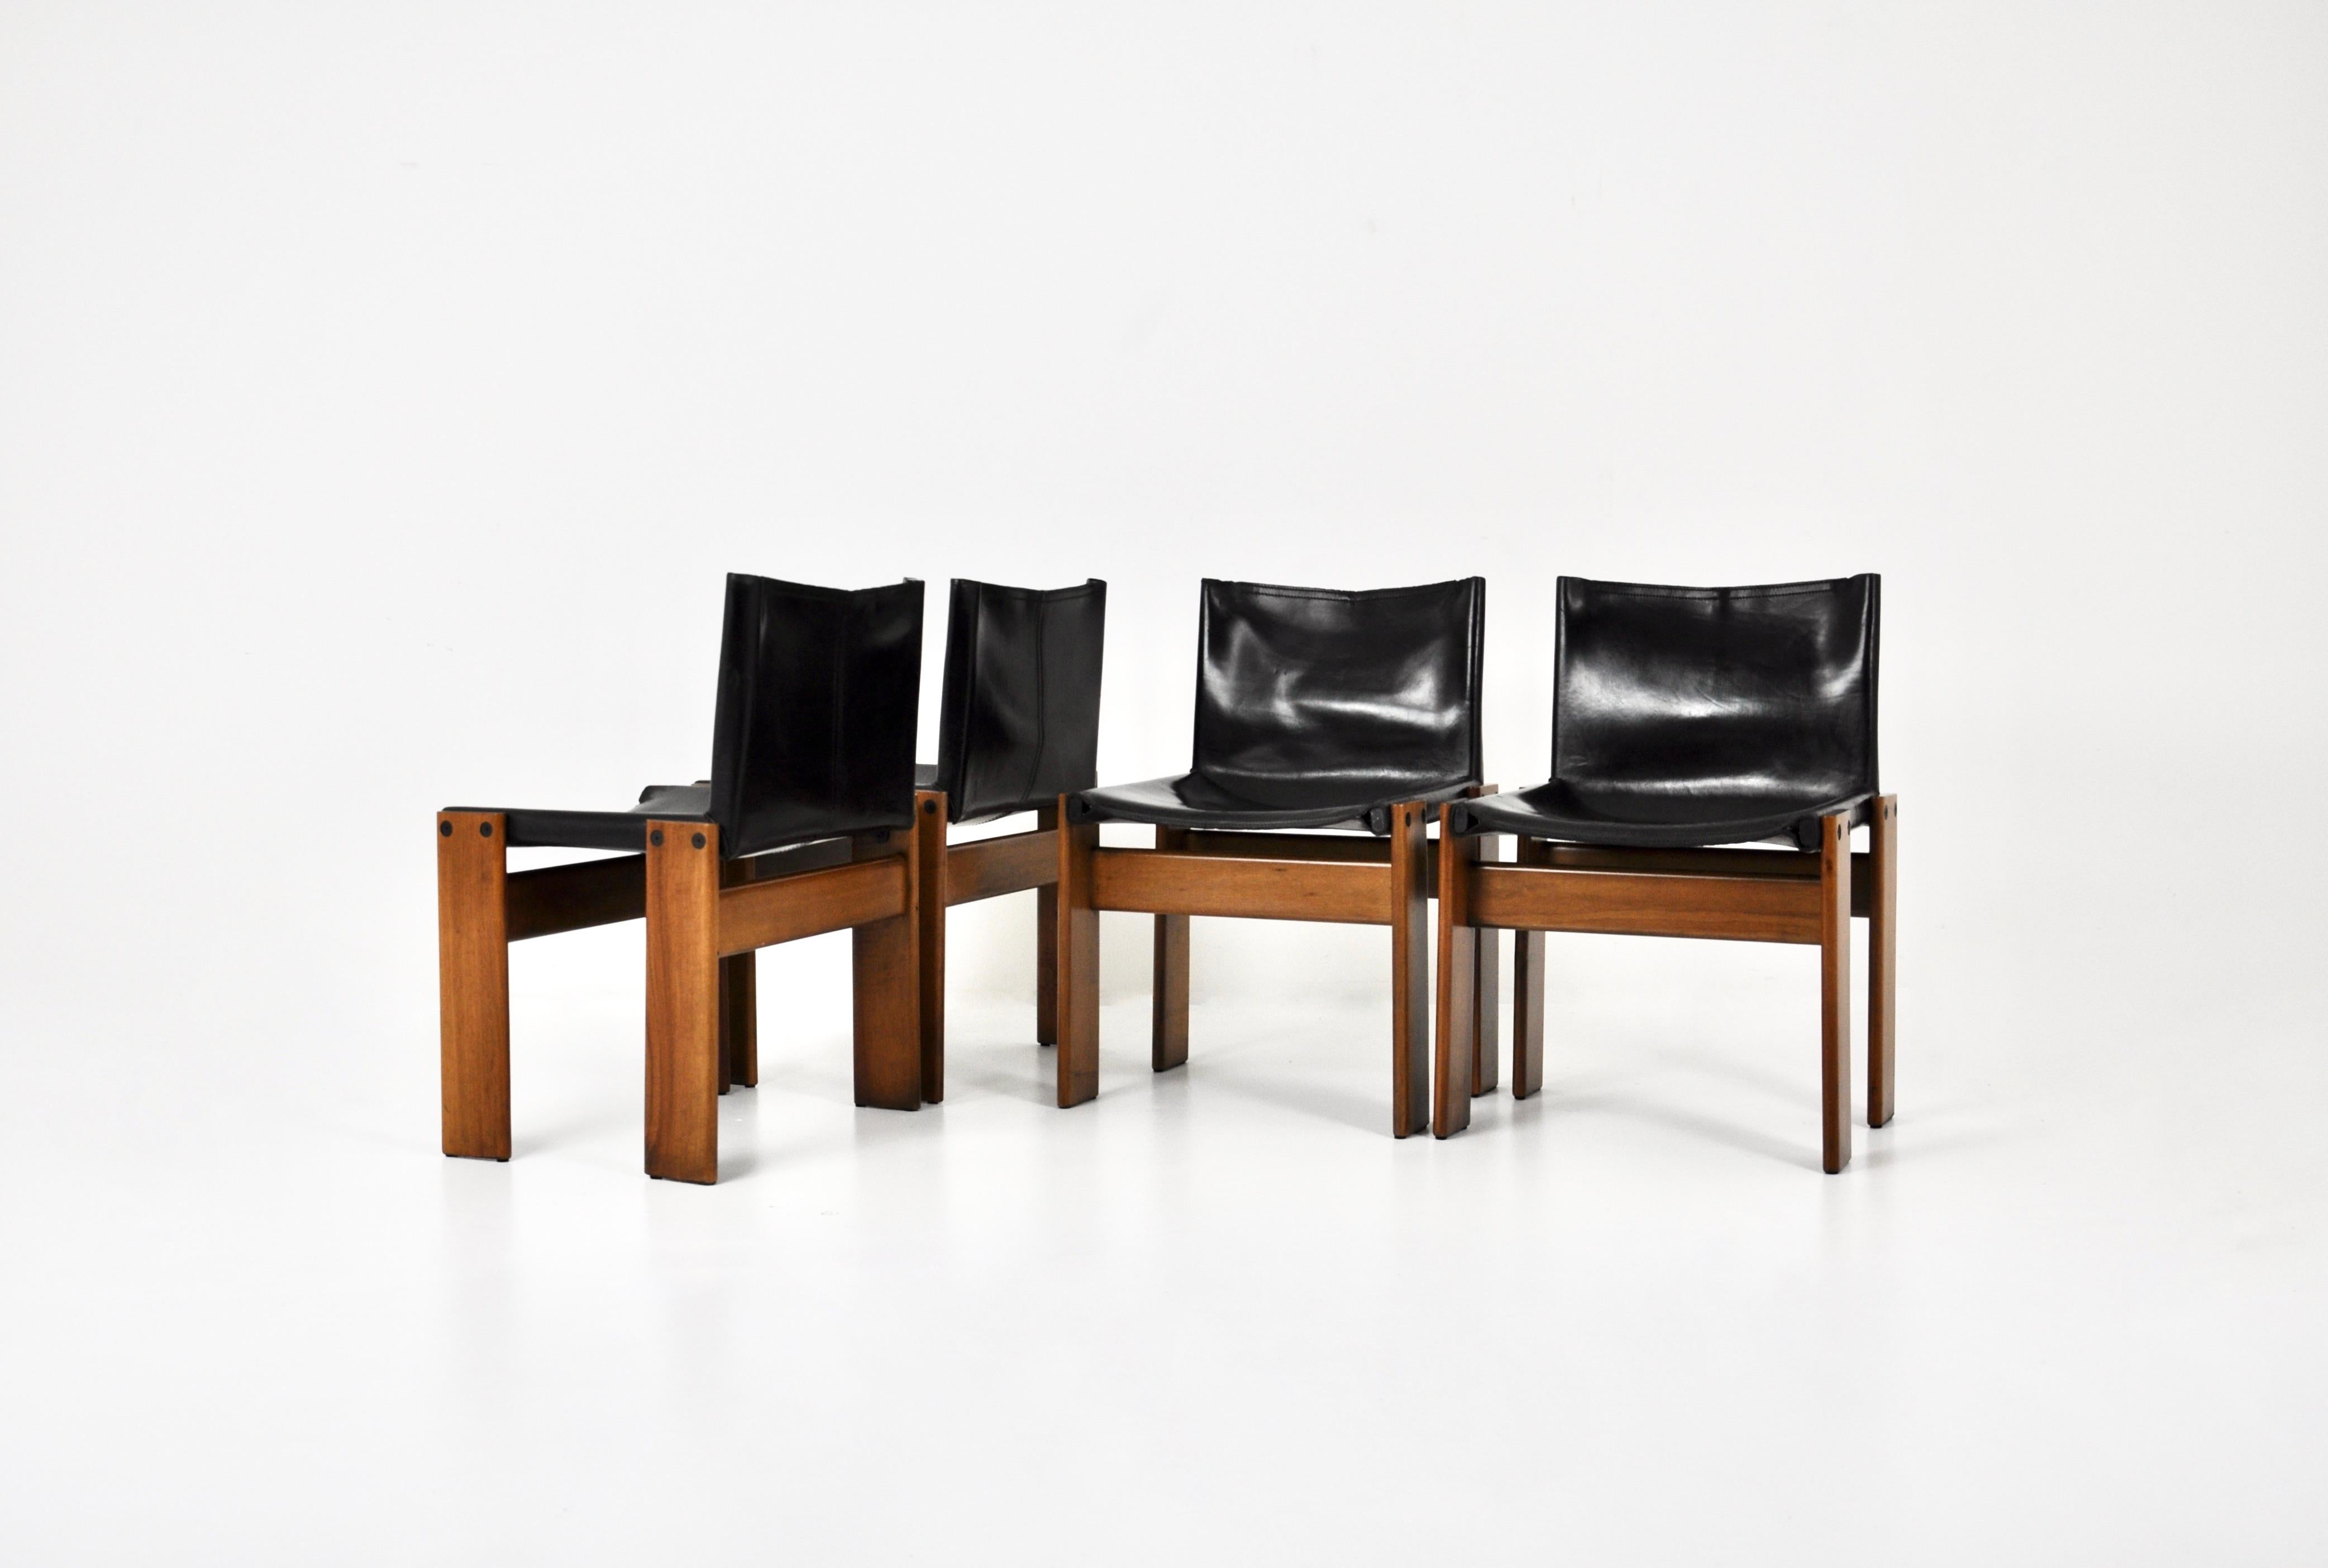 Set aus 4 Stühlen aus schwarzem Leder und Holz, entworfen von Afra & Tobia Scarpa. Modell: Mönch. Sitzhöhe: 43cm Zeit- und altersbedingte Abnutzung der Stühle.
 